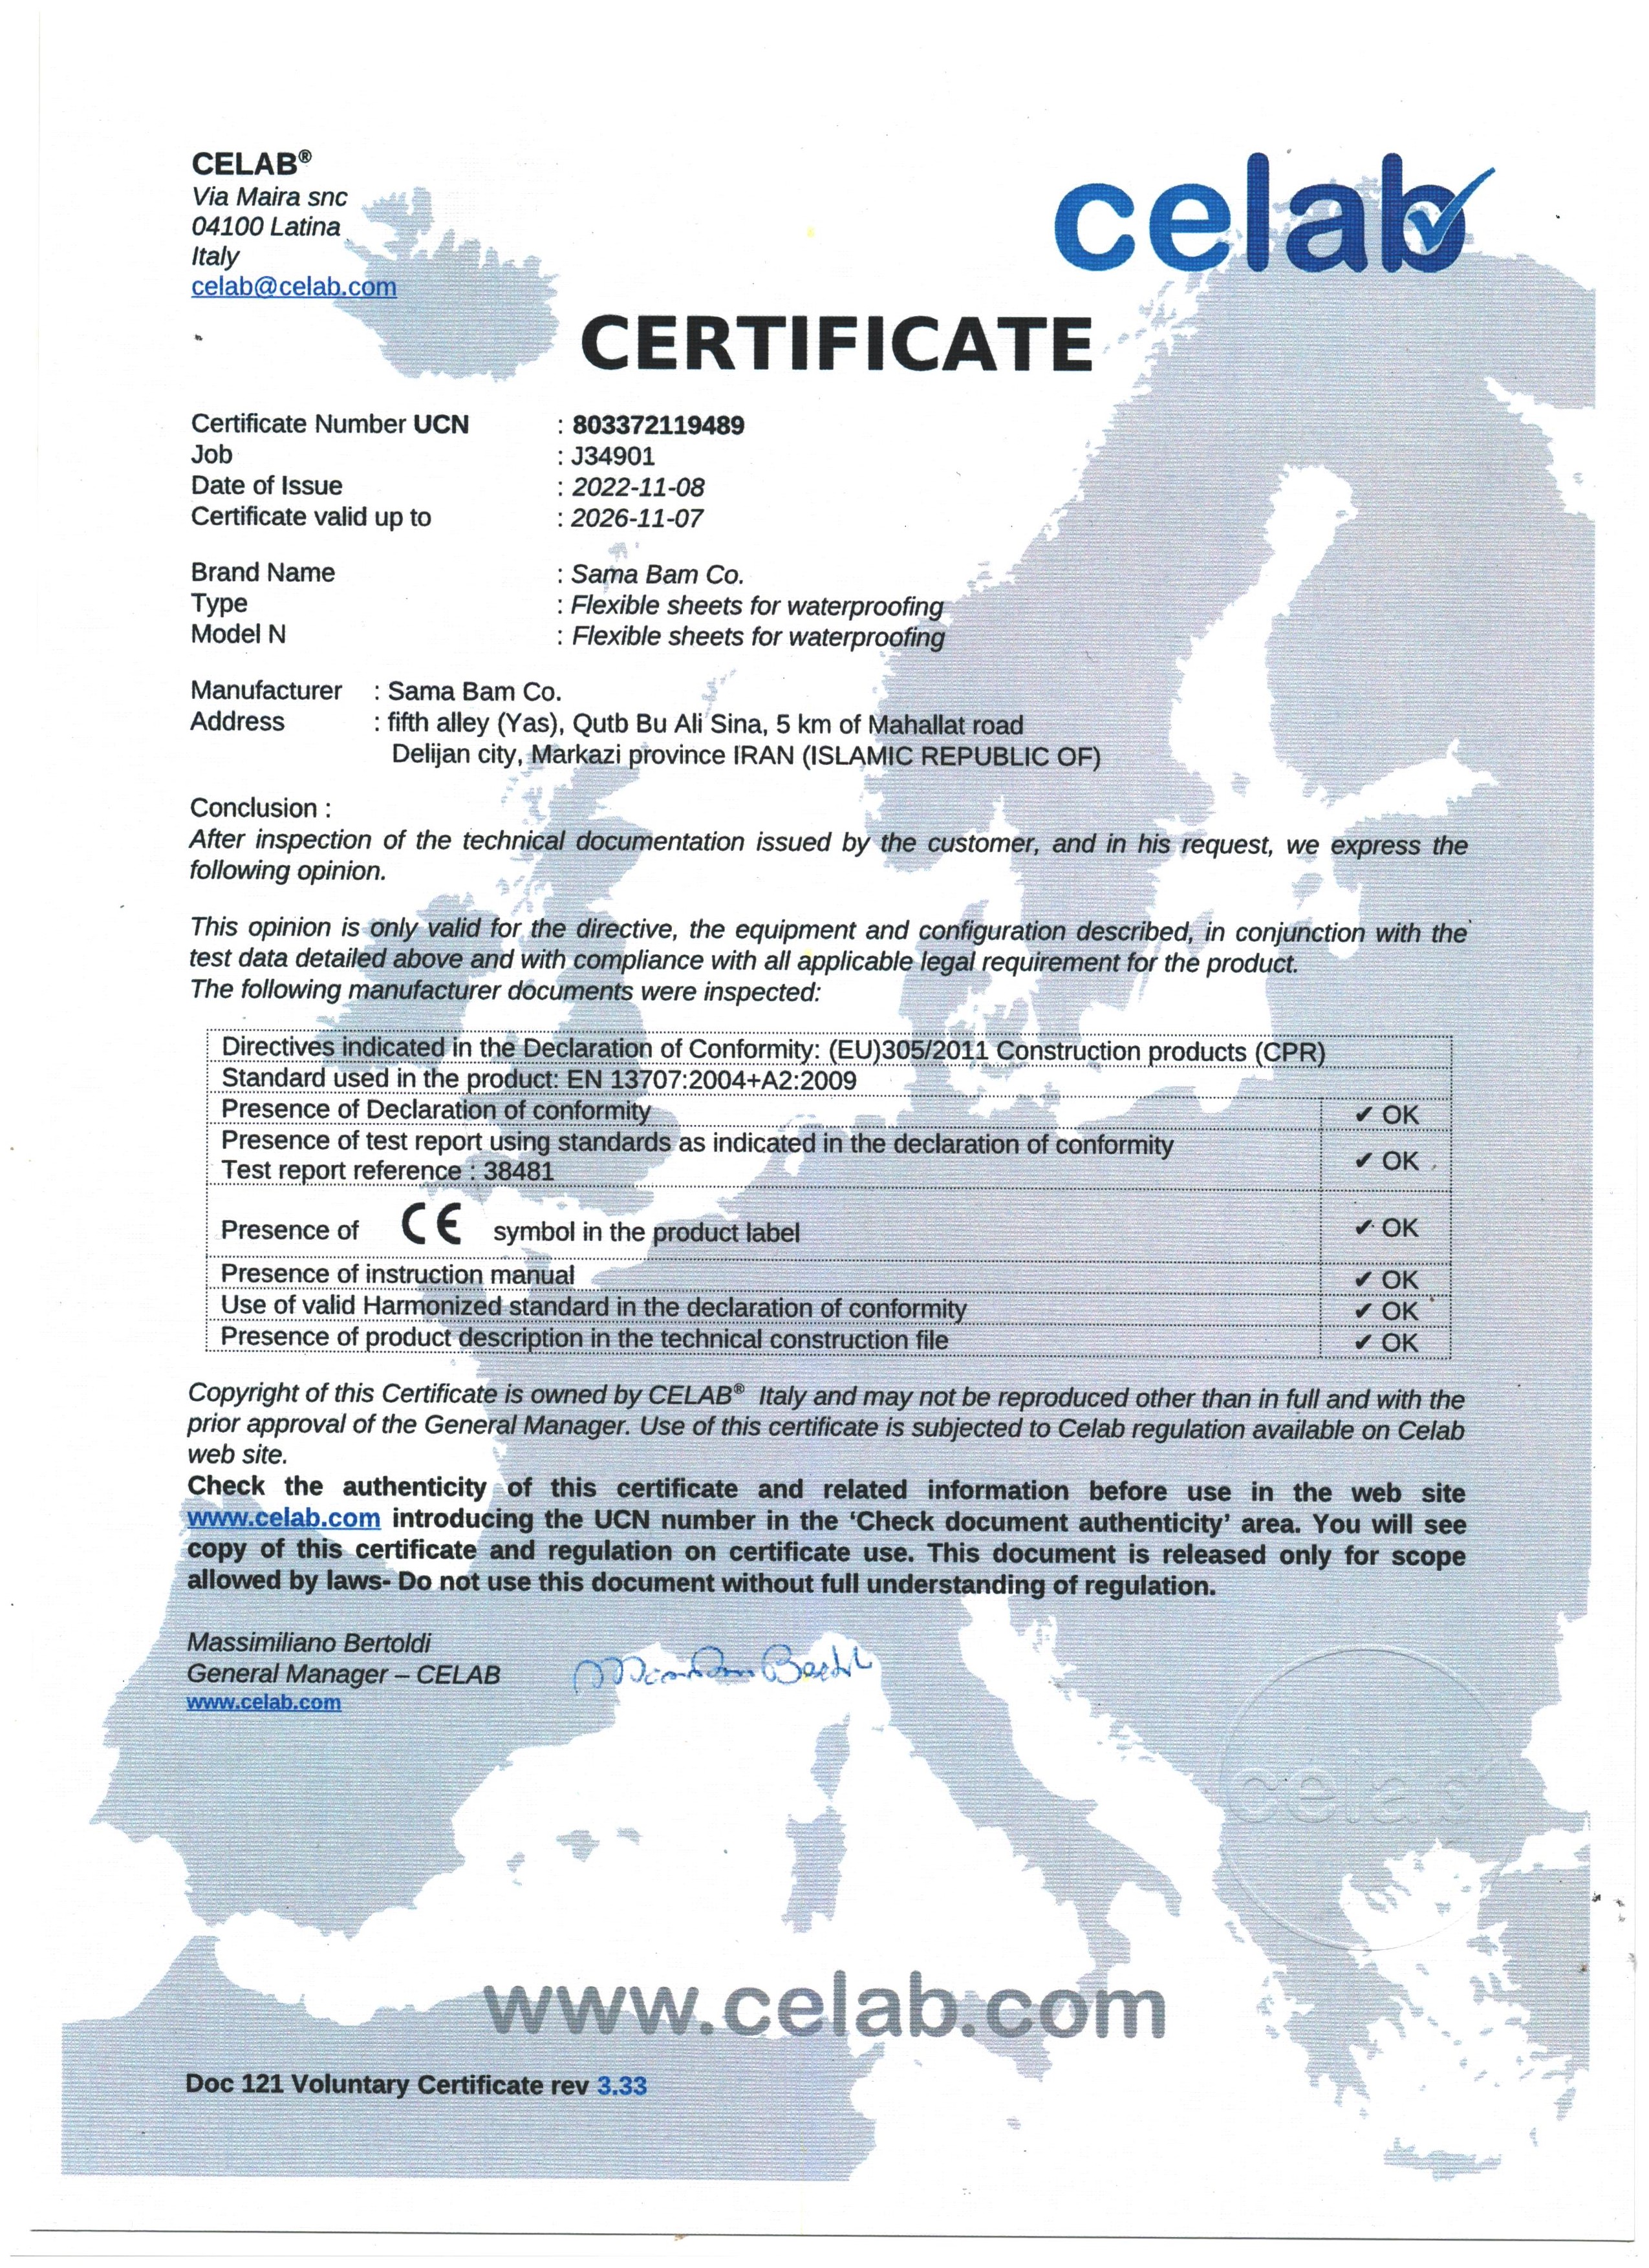 دریافت گواهینامه بین المللی CE اروپا